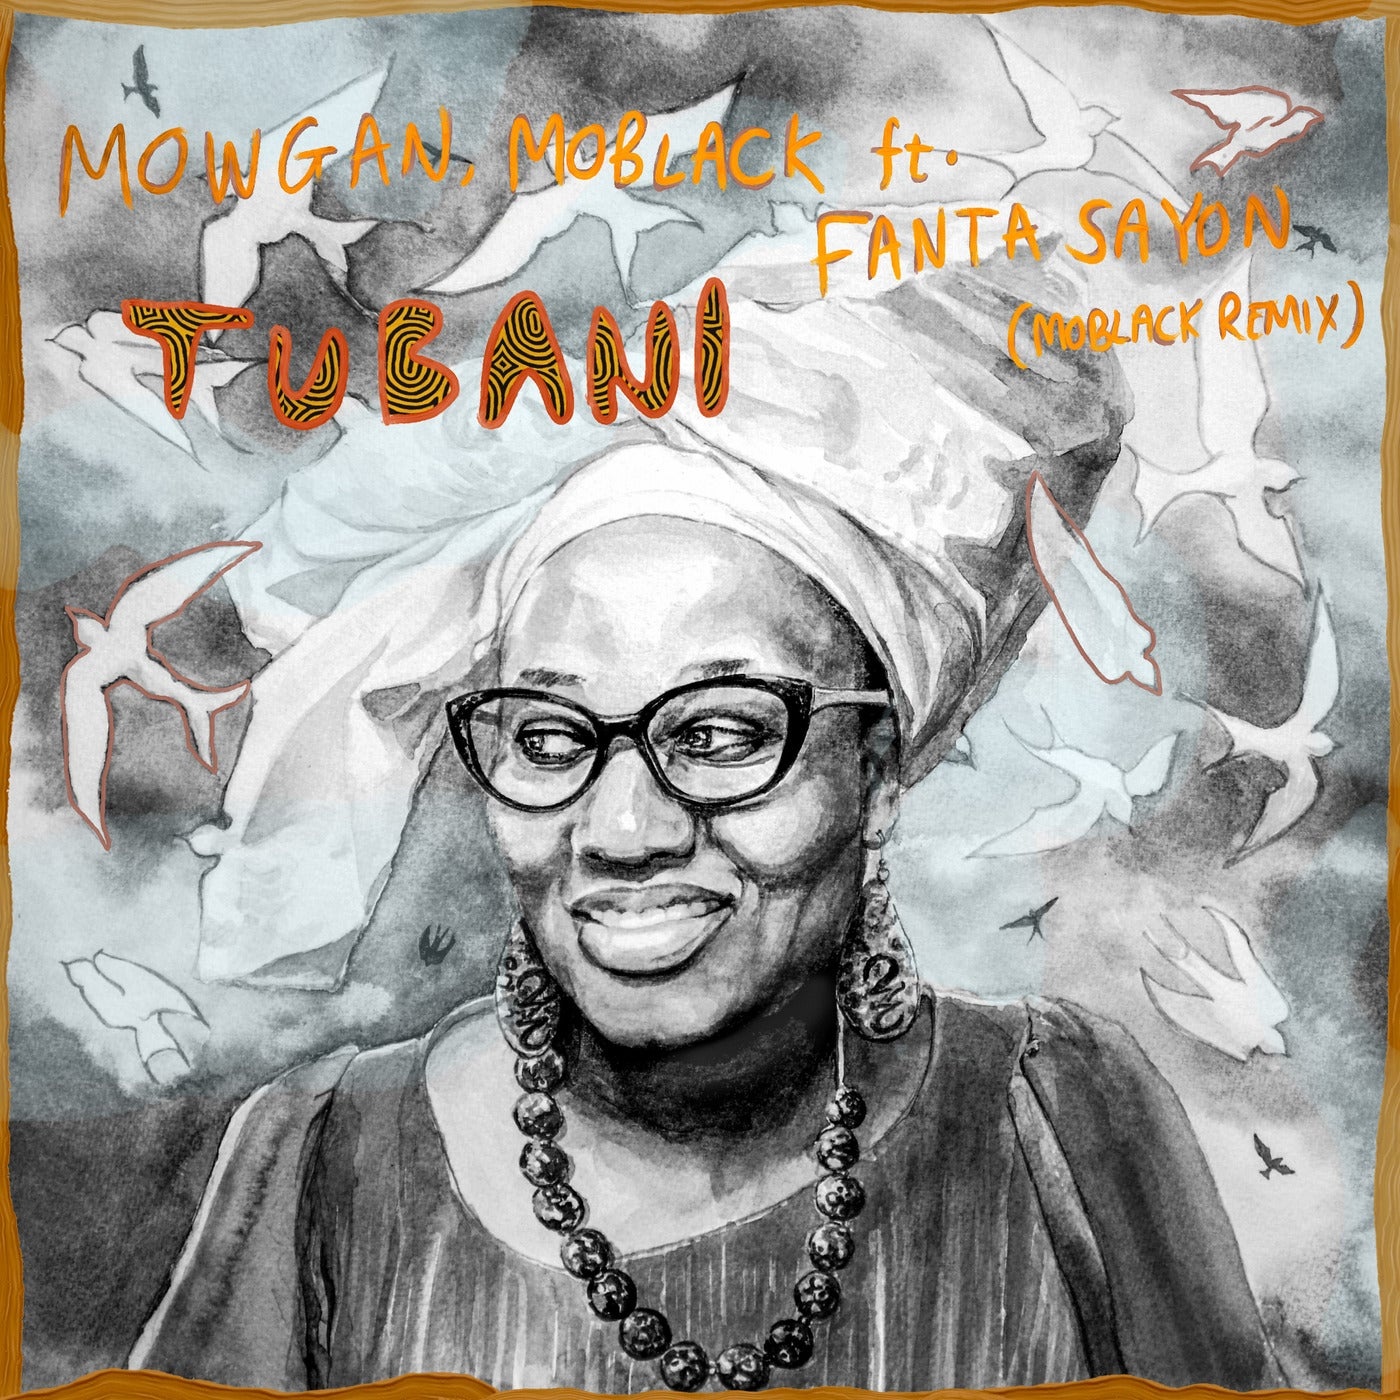 Mowgan & Fanta Sayon - Tubani (MoBlack Remix) [MBR453]